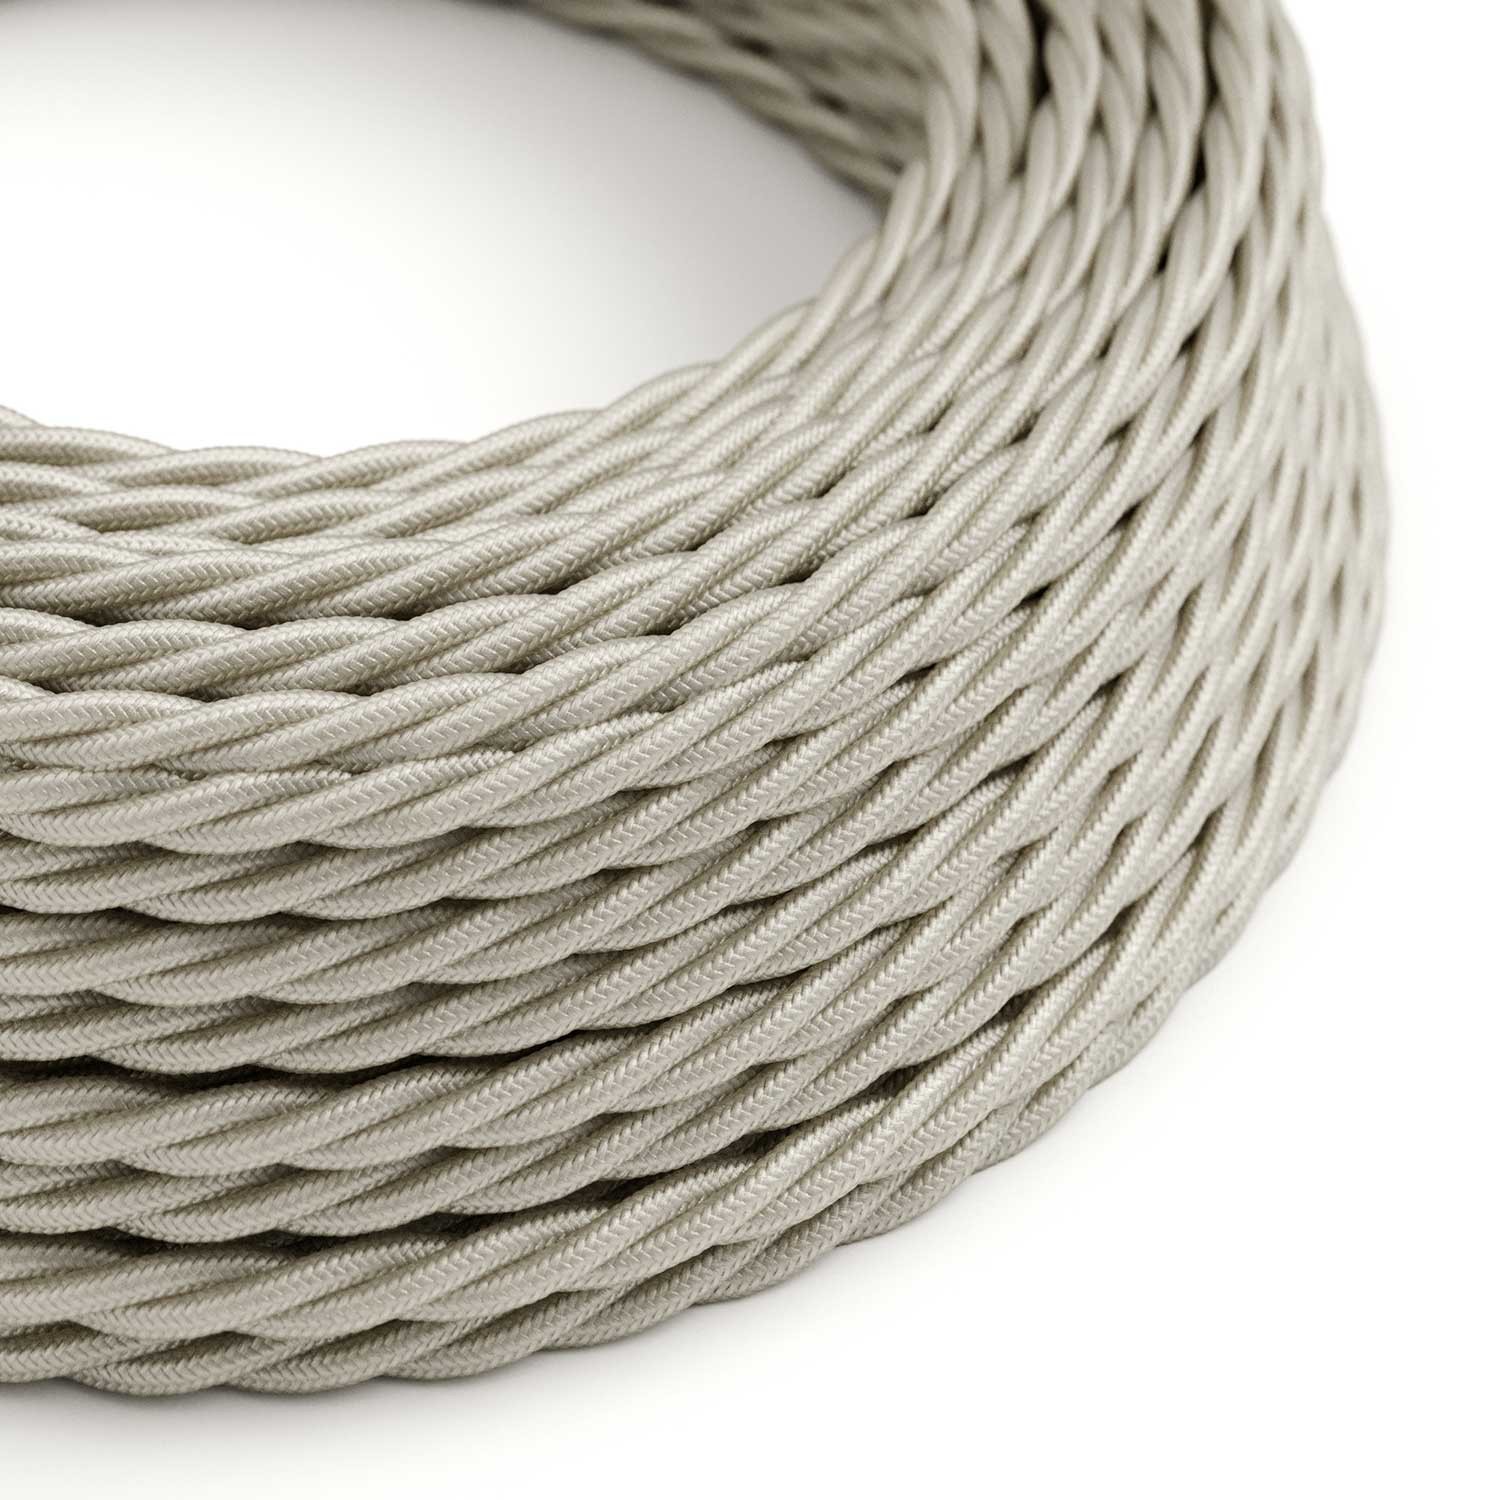 Stočený textilný elektrický kábel, umelý hodváb, jednofarebný, TM00 Slonovinová